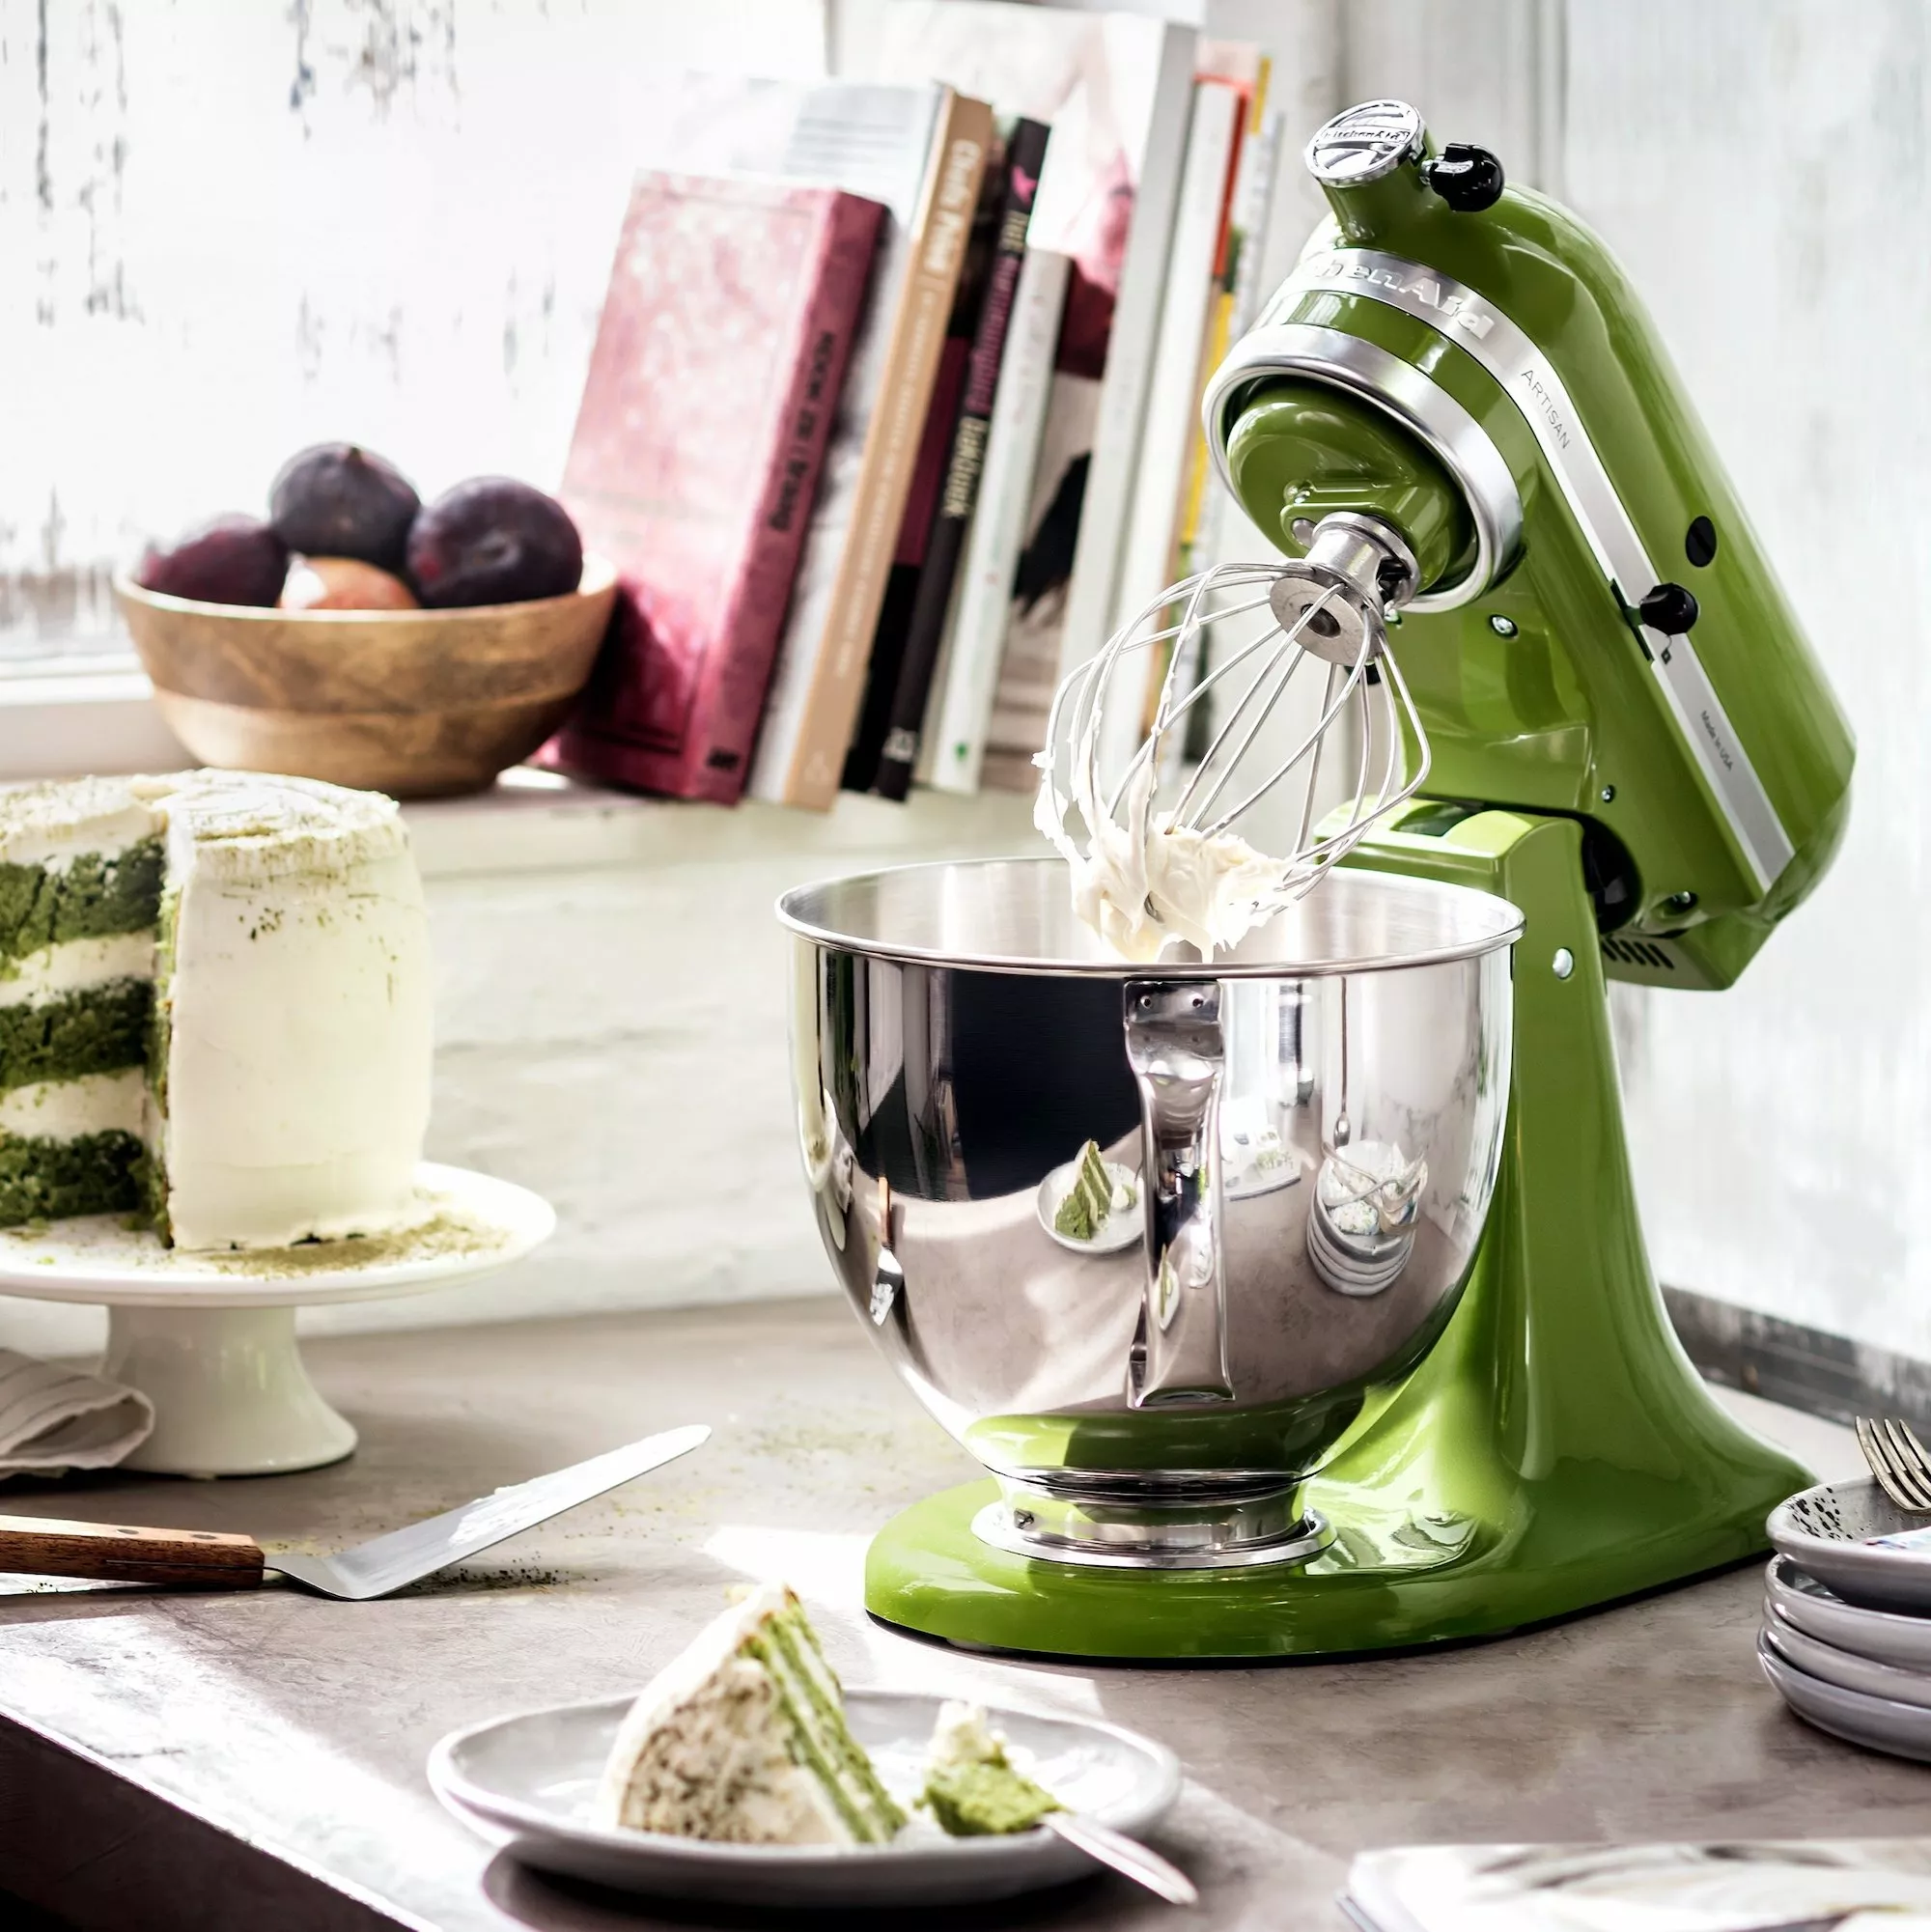 robot kuchenny kitchenaid artisan 5ksm175psema matcha prezentacja ustawienia na blacie widok na ubijanie masy do ciasta